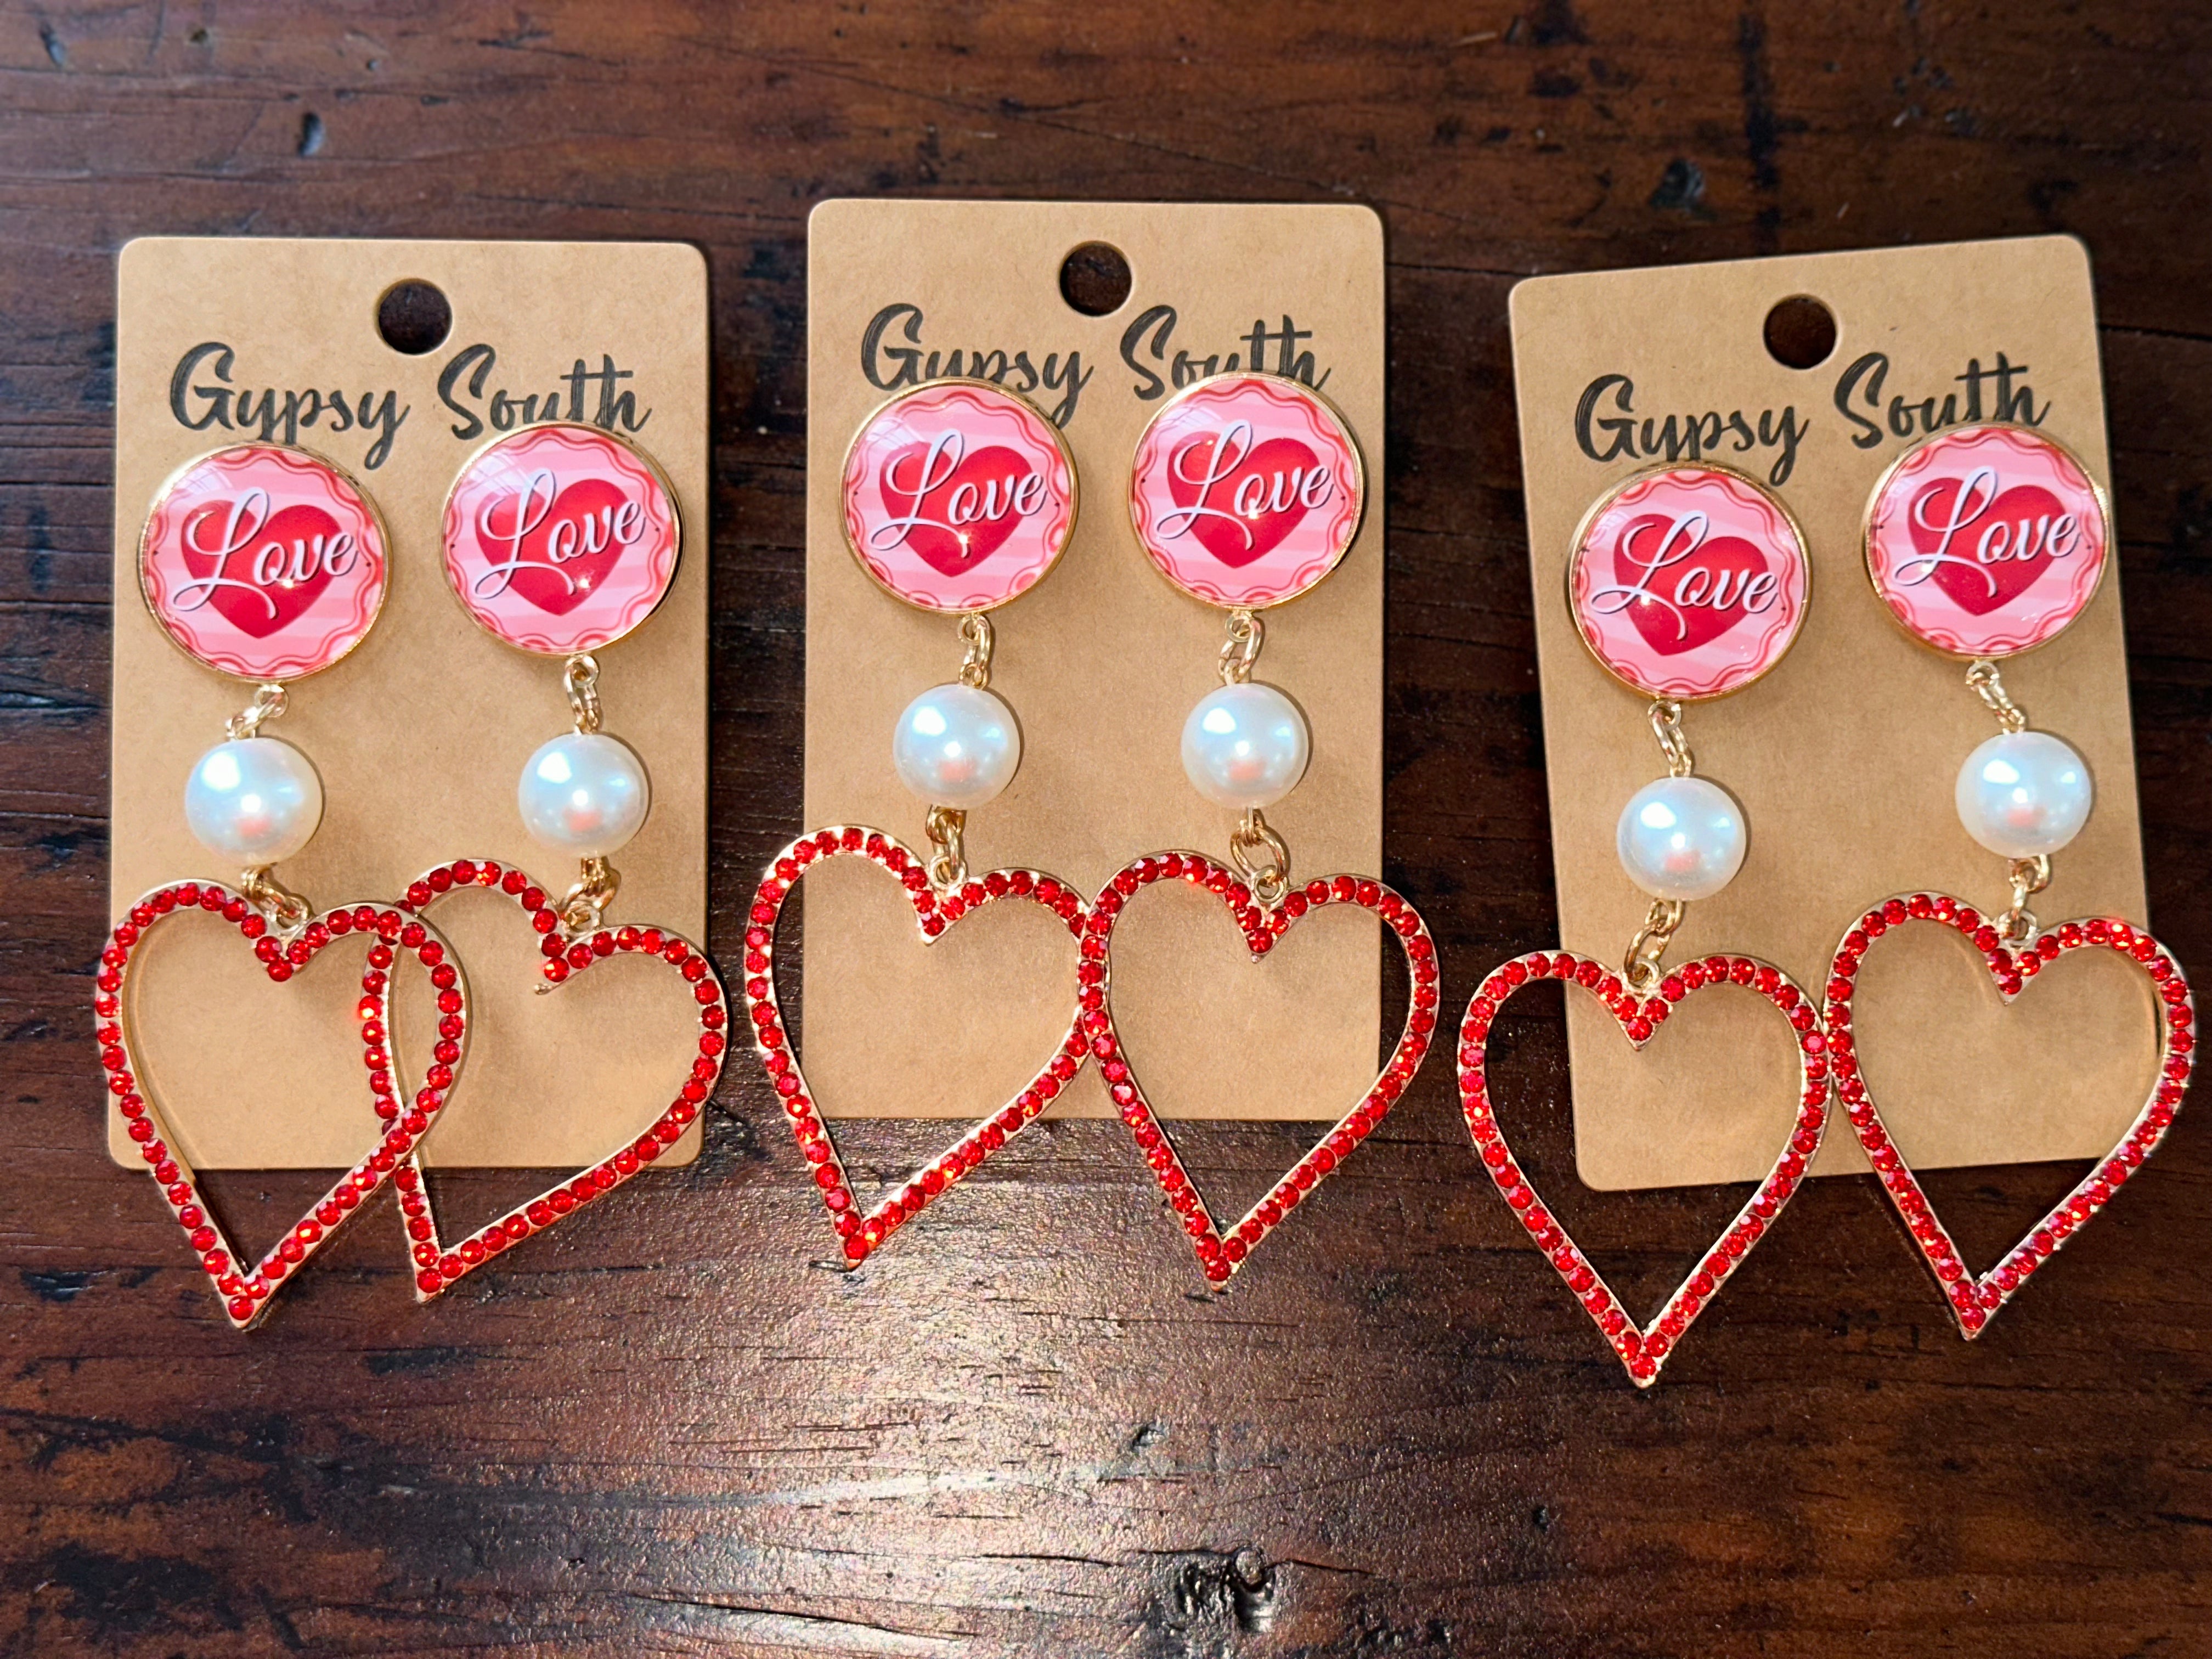 Gypsy South Love Heart Earrings